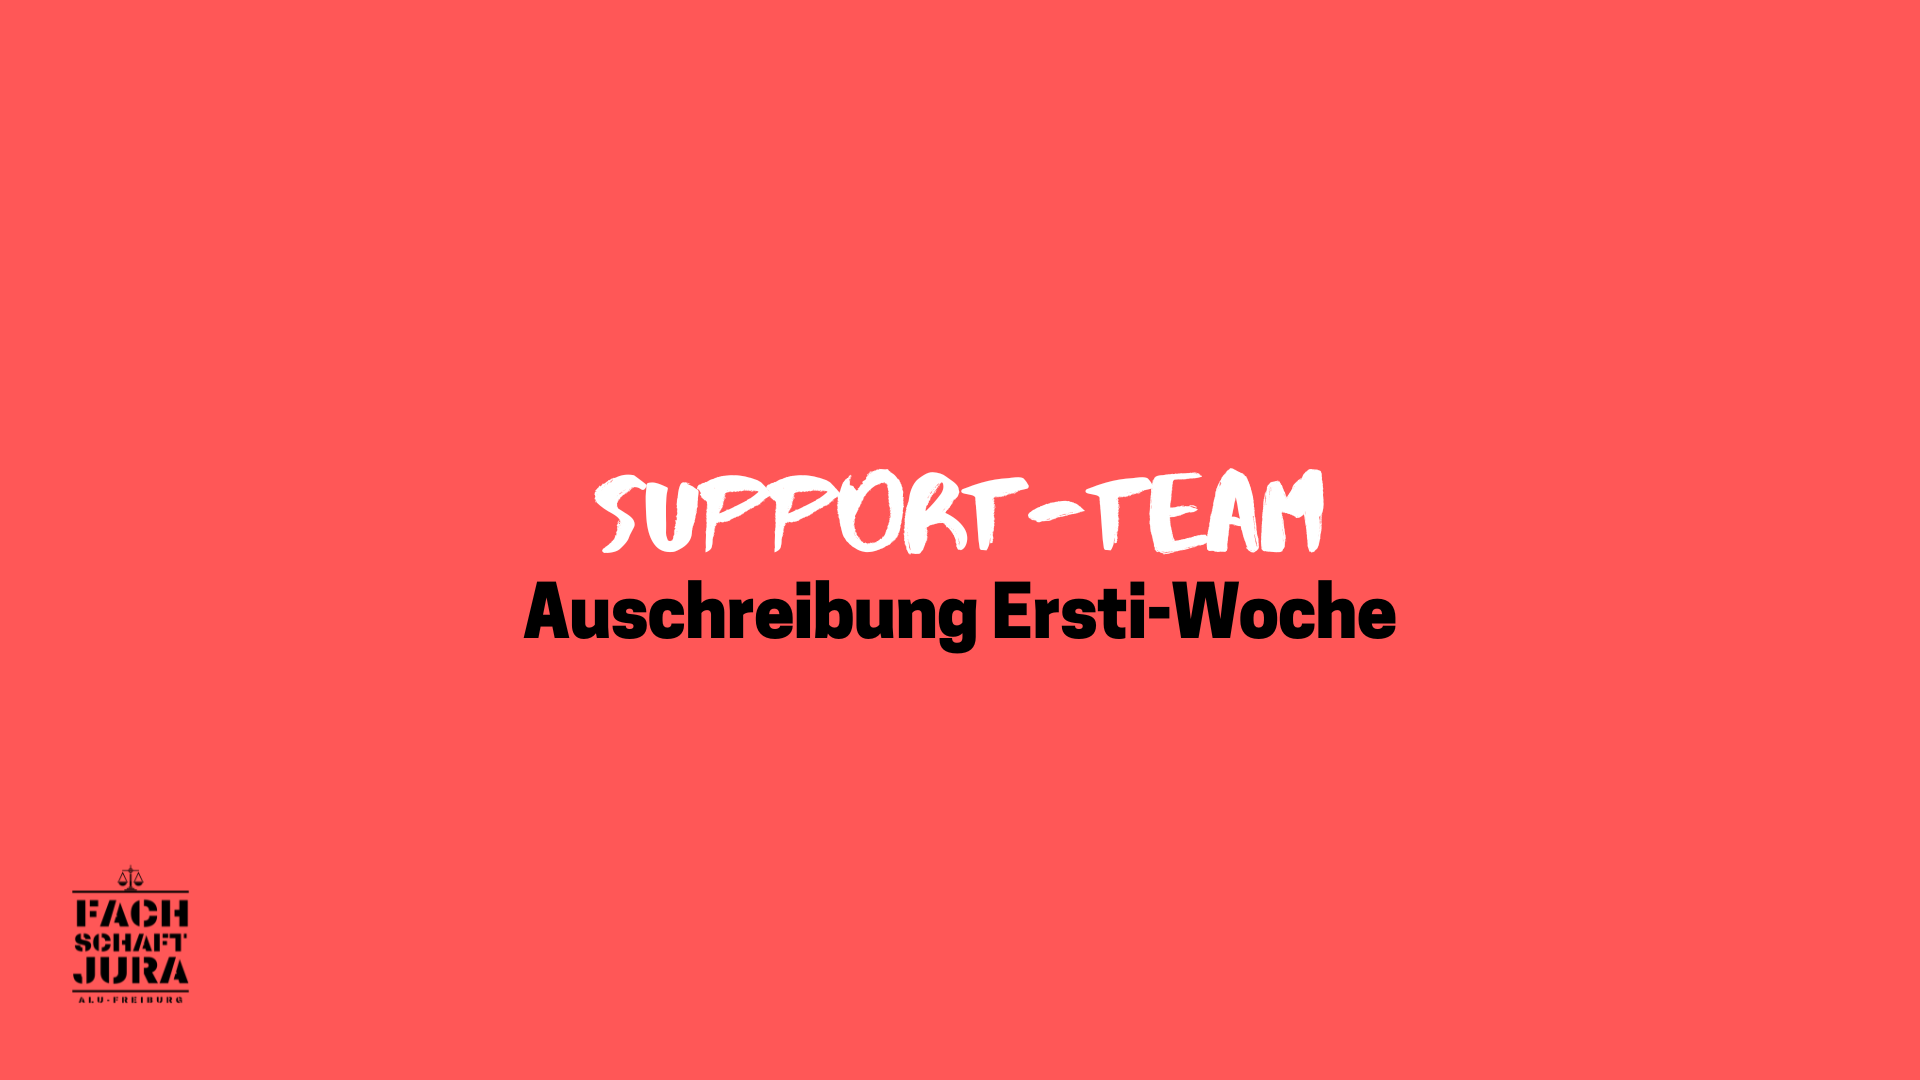 Support-Team Ersti-Woche